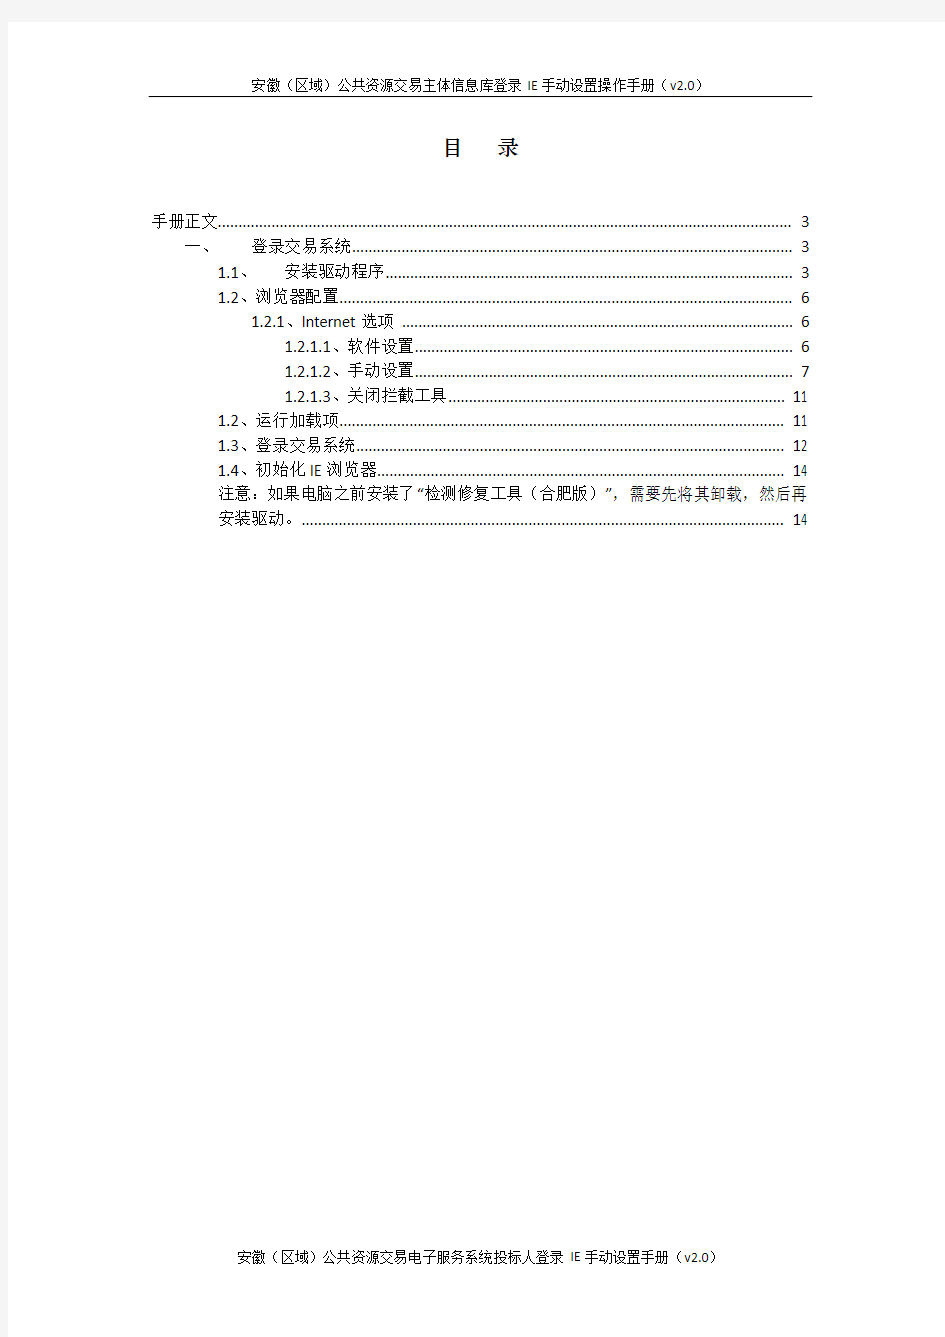 安徽(区域)公共资源交易主体信息库登录IE手动设置操作手册(v20)docx